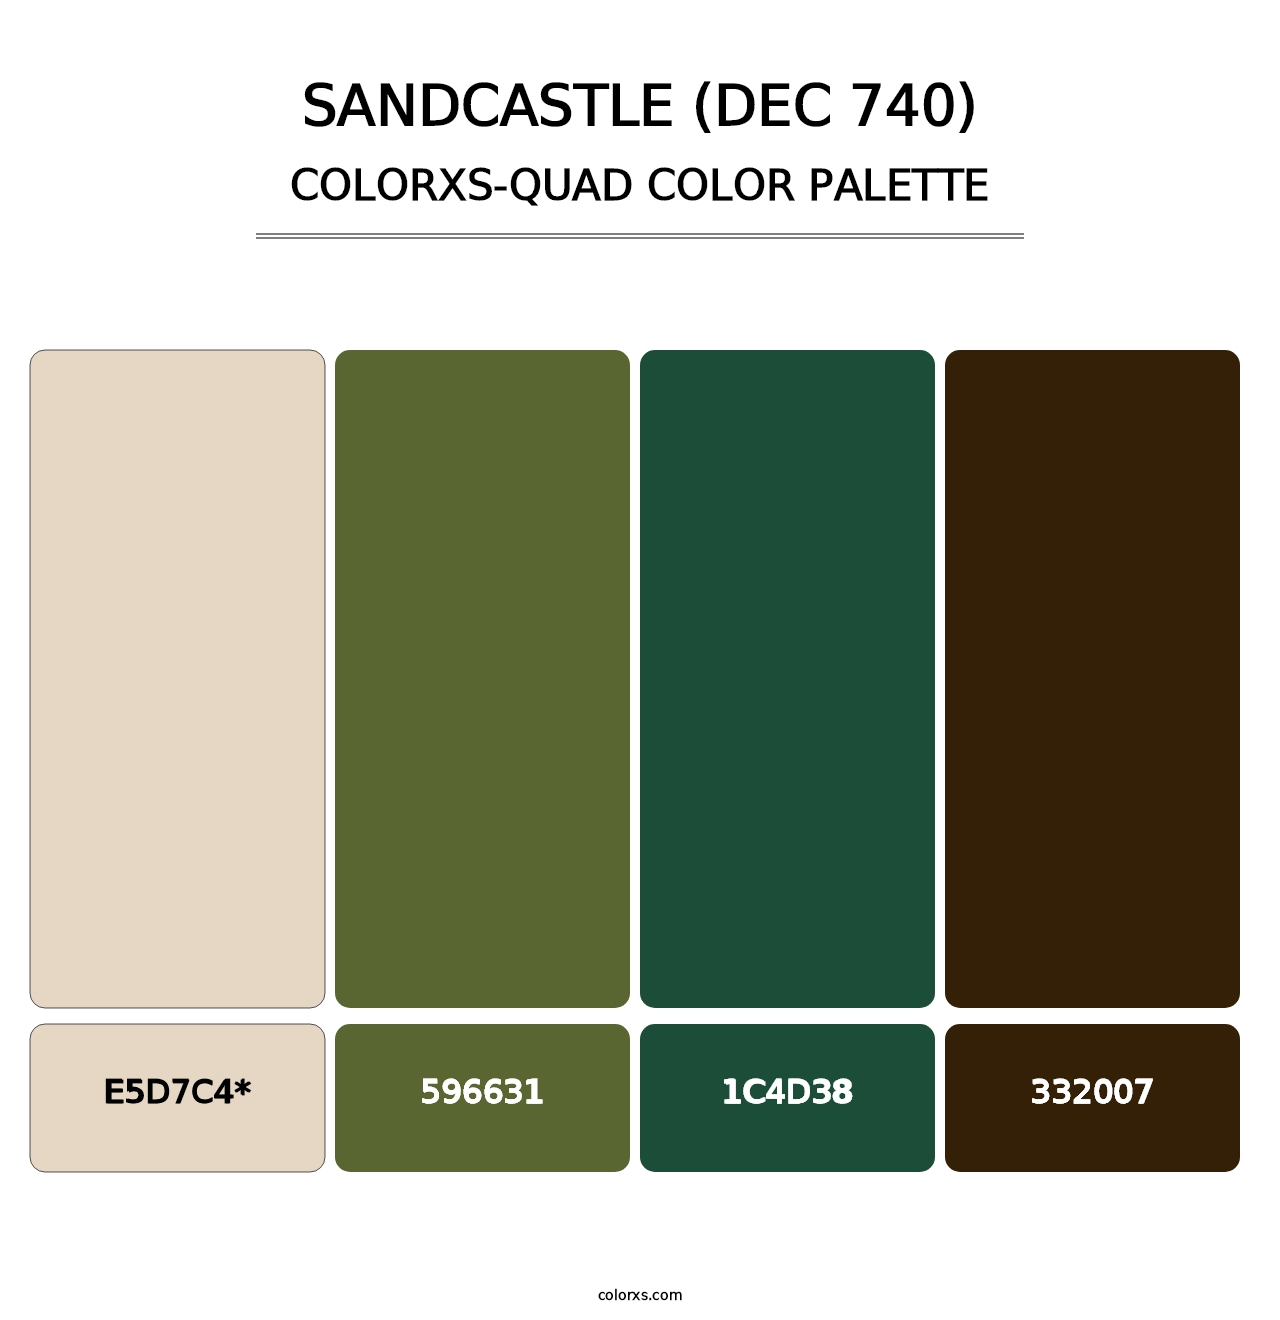 Sandcastle (DEC 740) - Colorxs Quad Palette